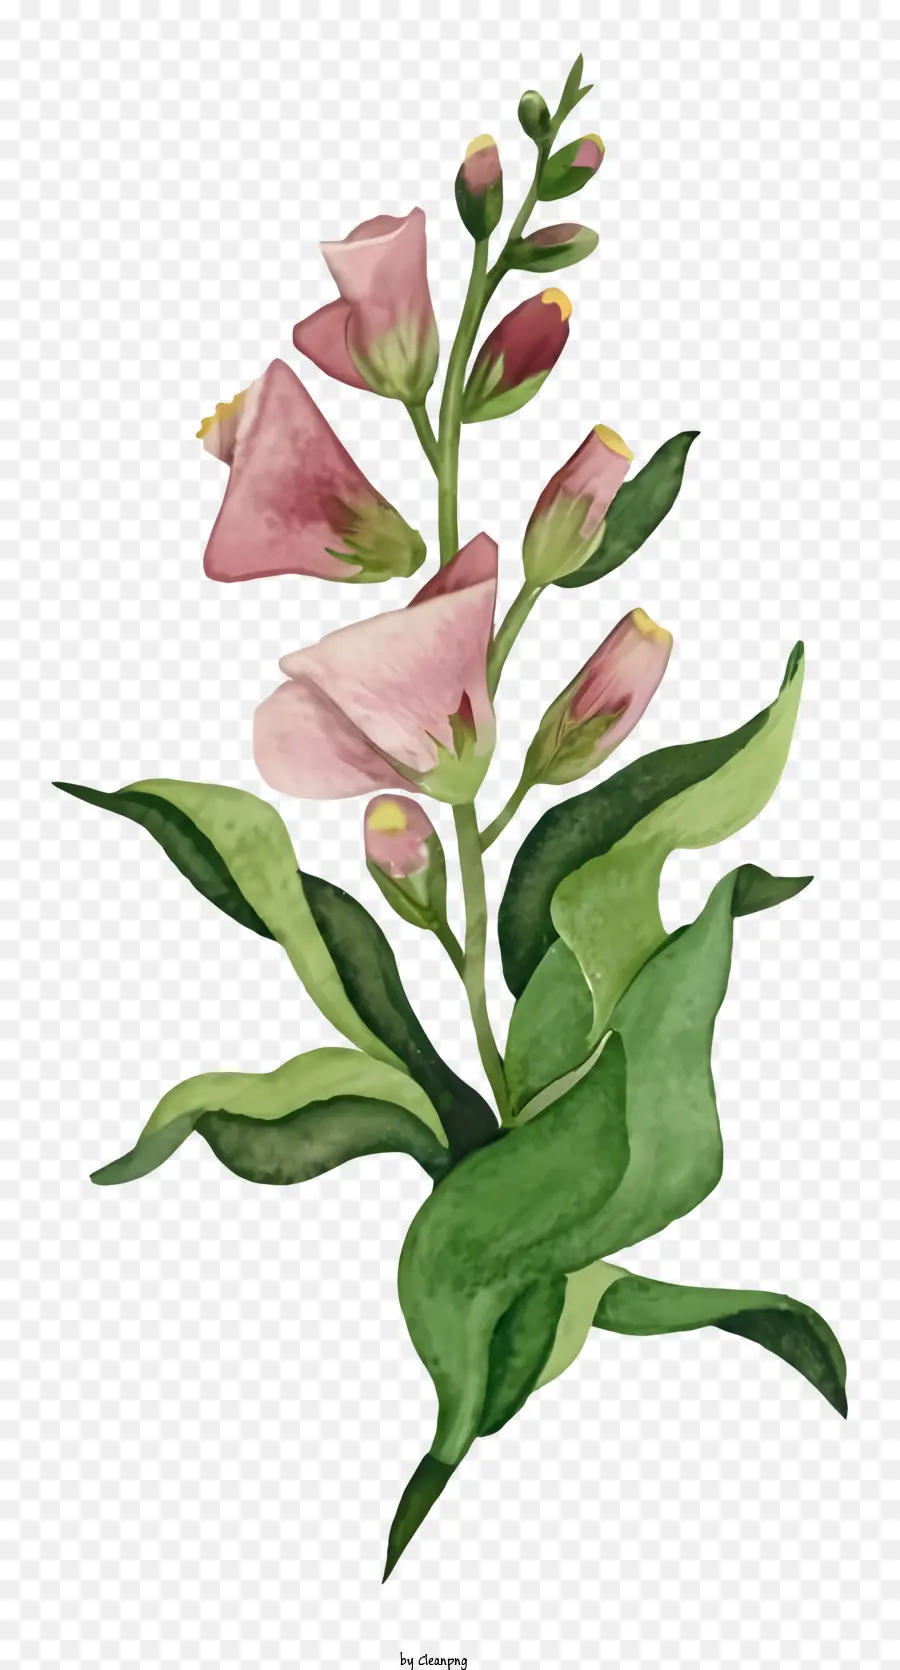 Blume Zeichnung - Einfache rosa Blume mit großen grünen Blättern